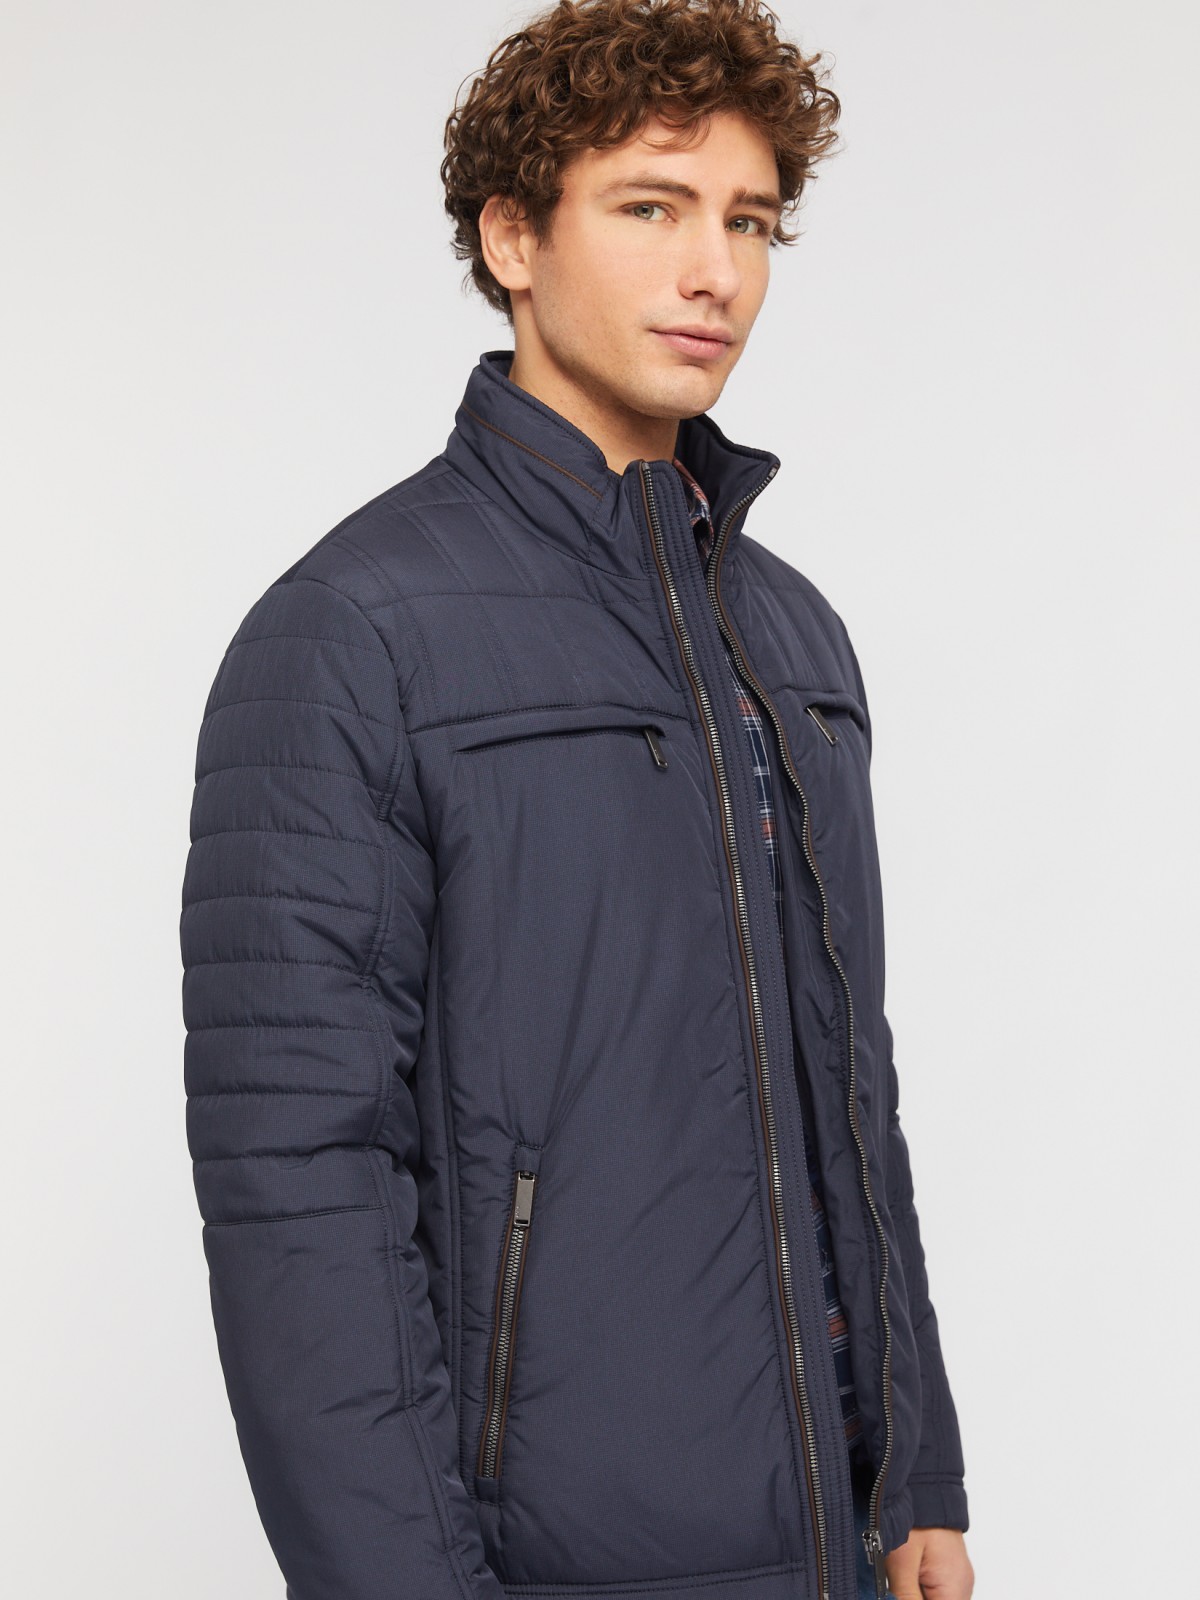 Утеплённая куртка на молнии с воротником-стойкой zolla 014135139034, цвет синий, размер L - фото 3